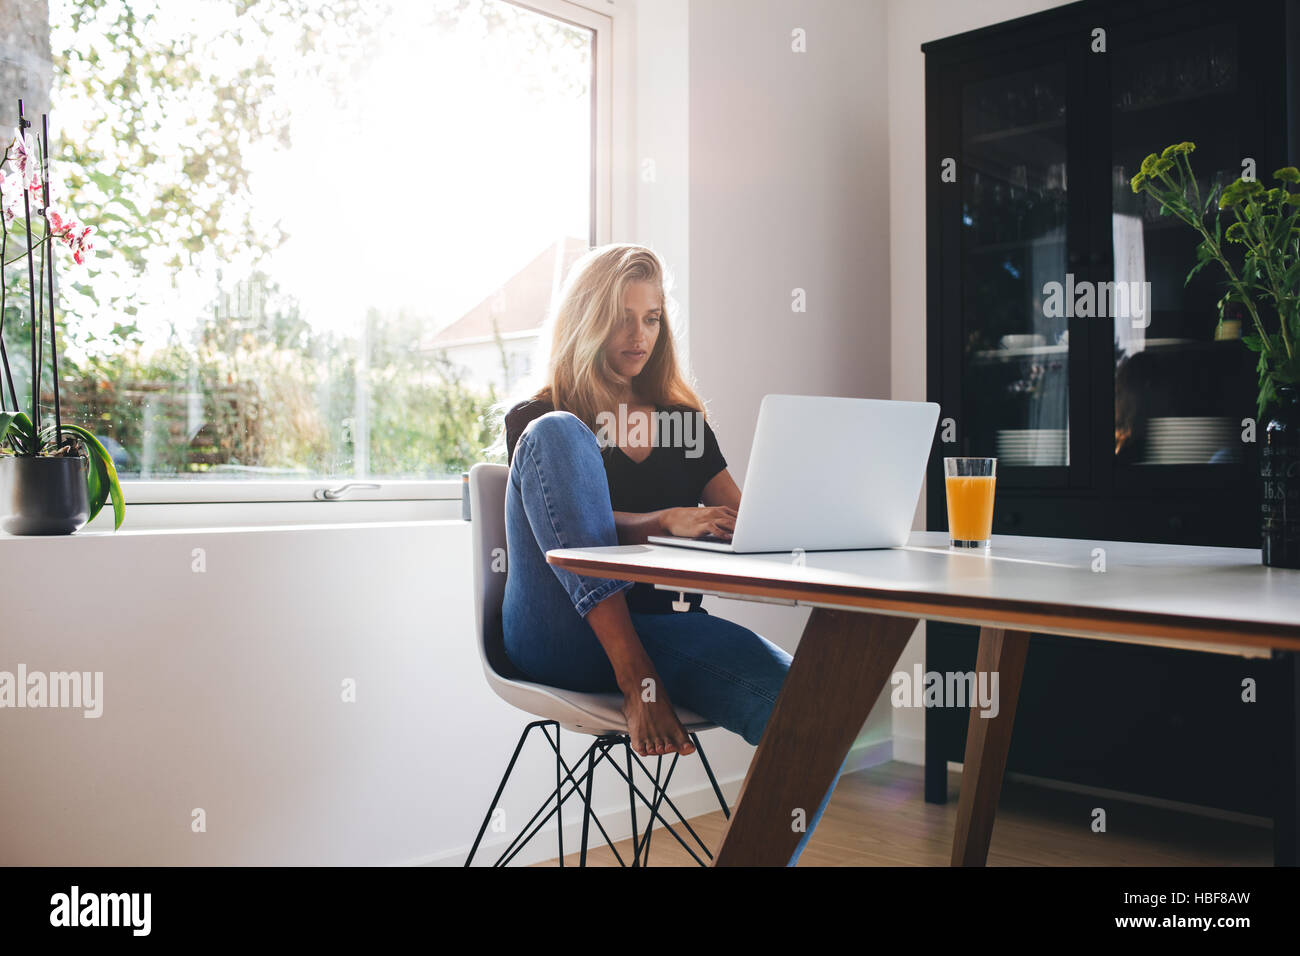 Junge Frau in der Küche sitzen und arbeiten am Laptop Morgen. Frau mit Laptop Esstisch mit Fruchtsaft. Stockfoto